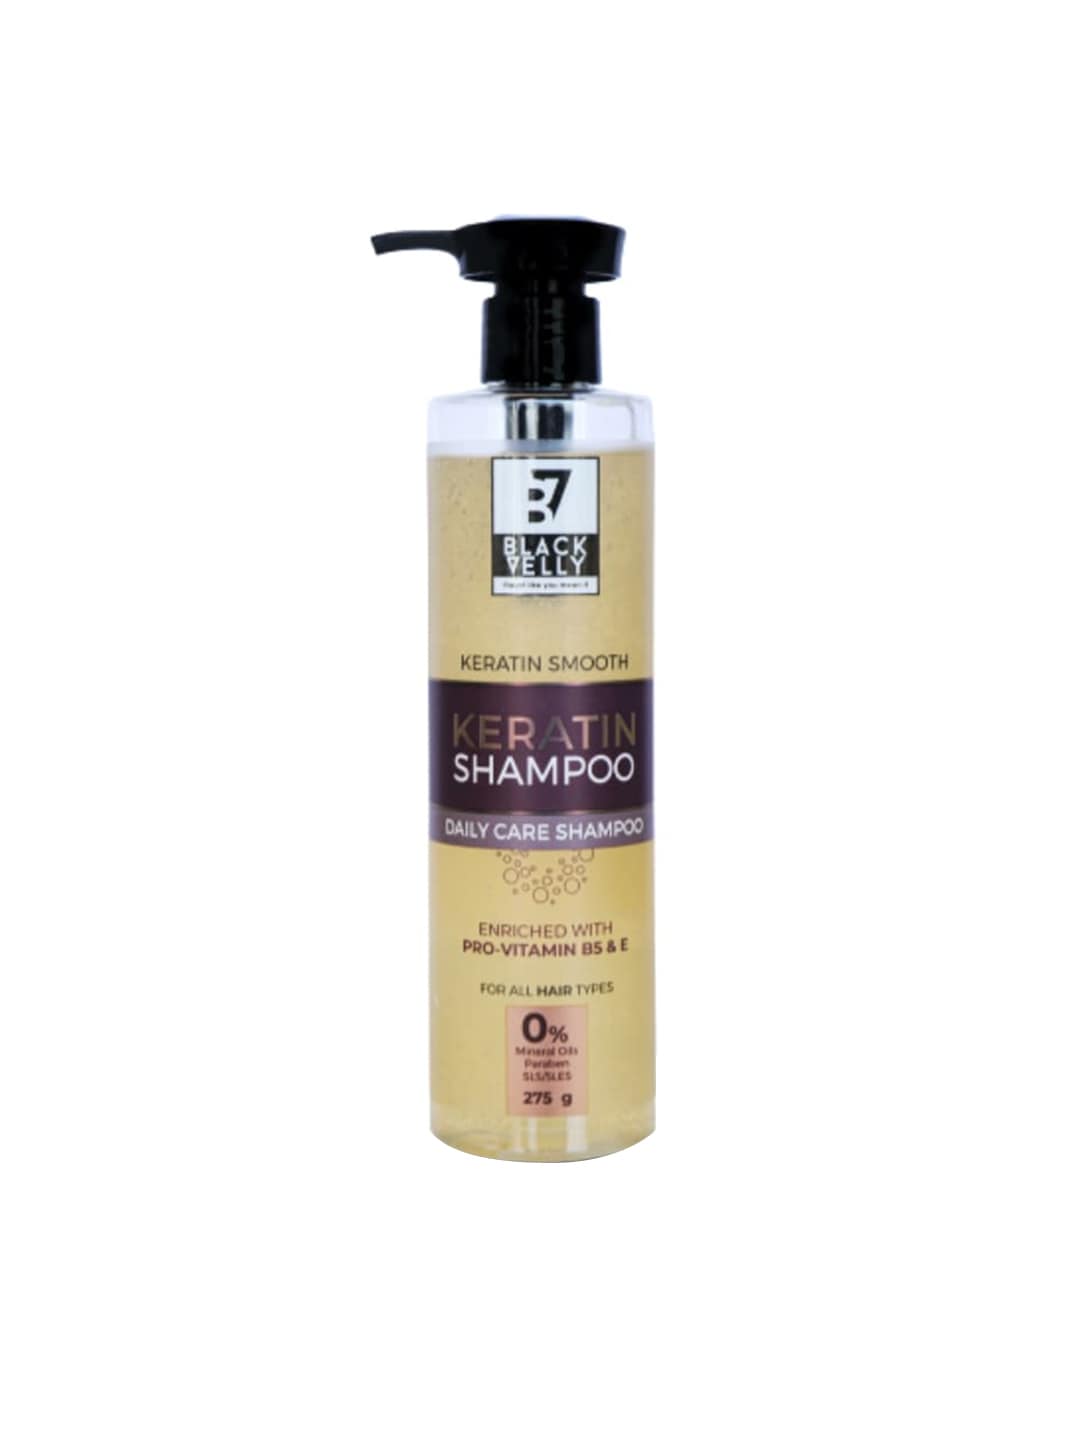 BLACKVELLY Keratin Shampoo 275 g Price in India